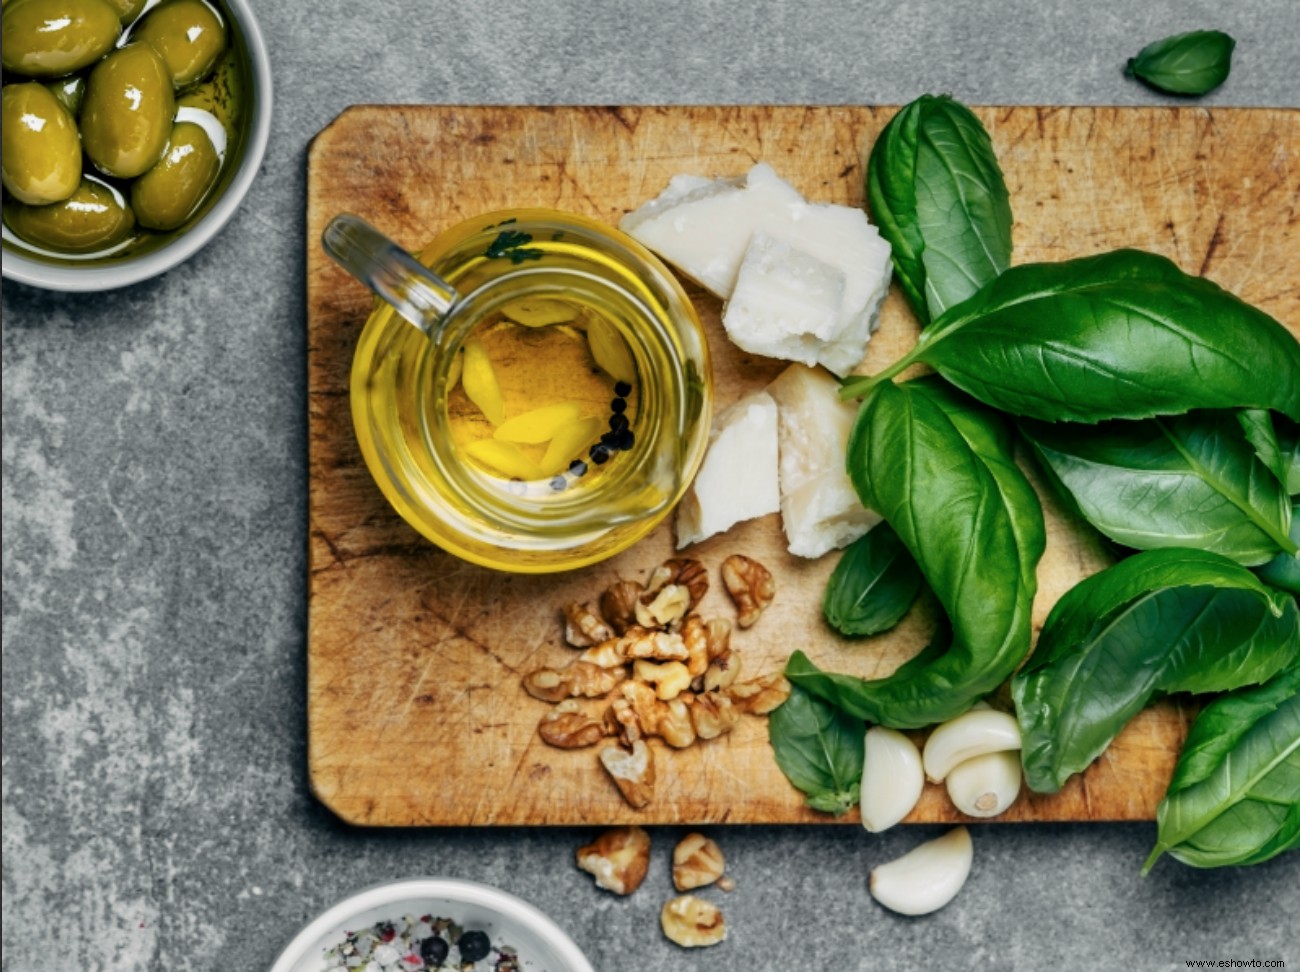 Seguir la dieta mediterránea podría reducir el riesgo de depresión, sugiere un estudio 